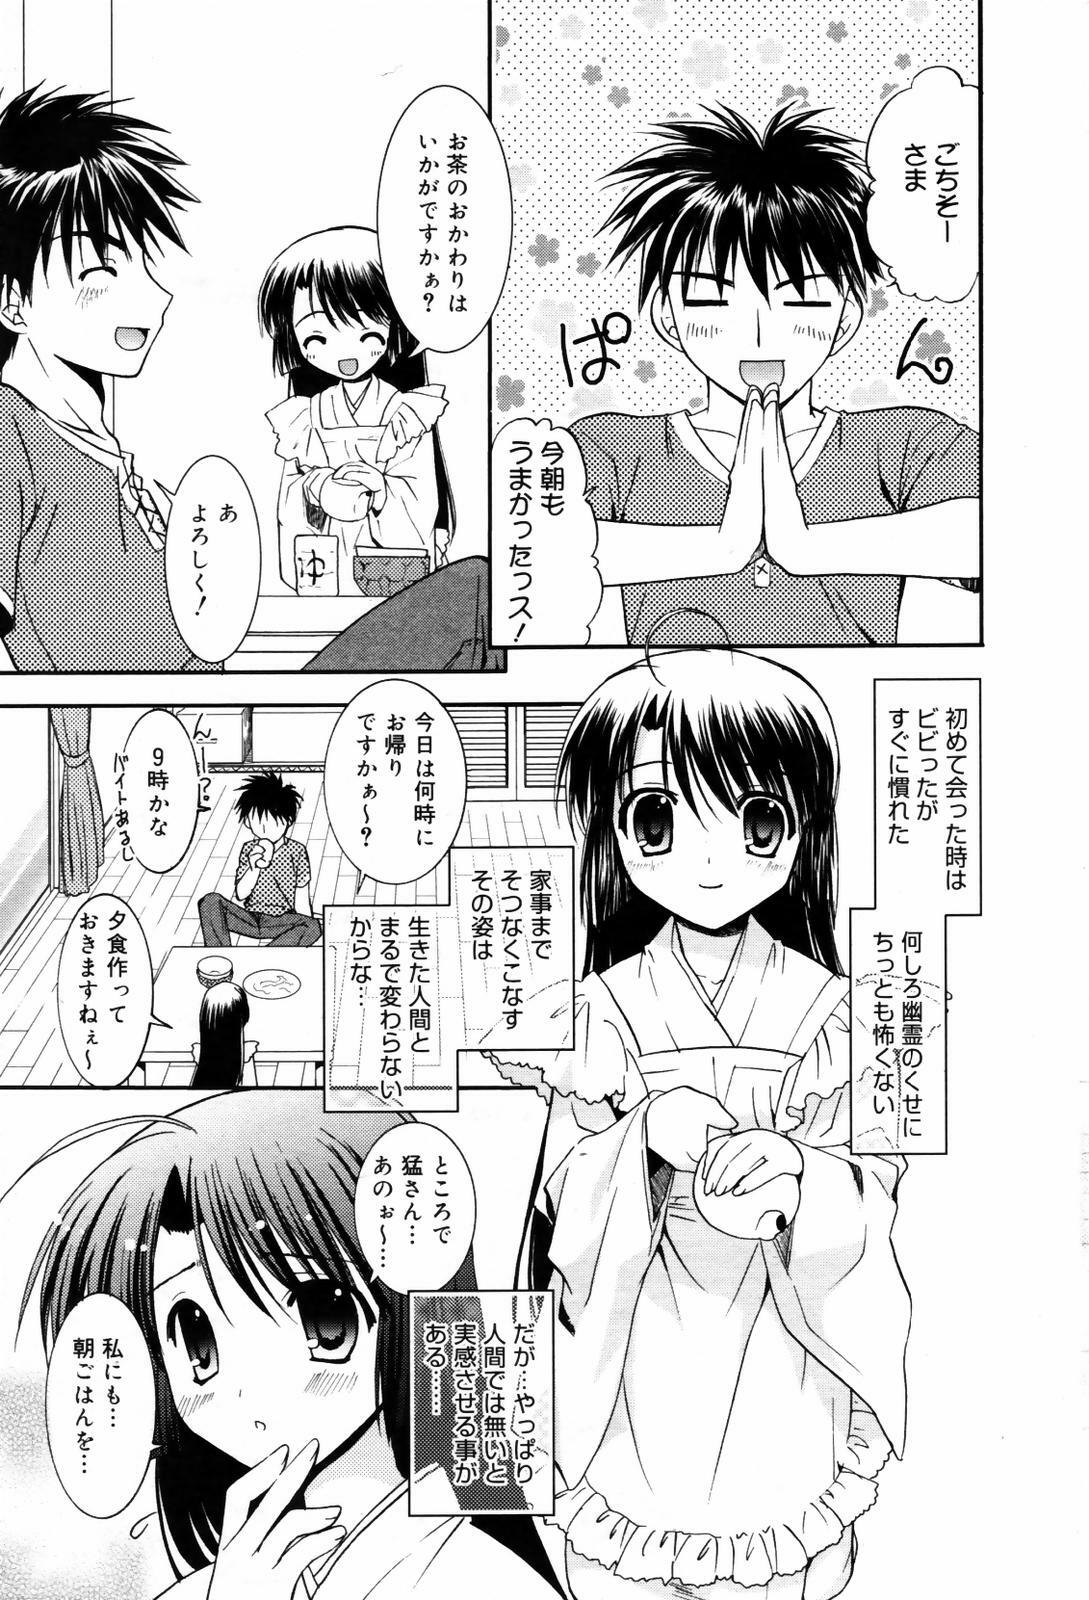 Manga Bangaichi 2007-09 page 23 full